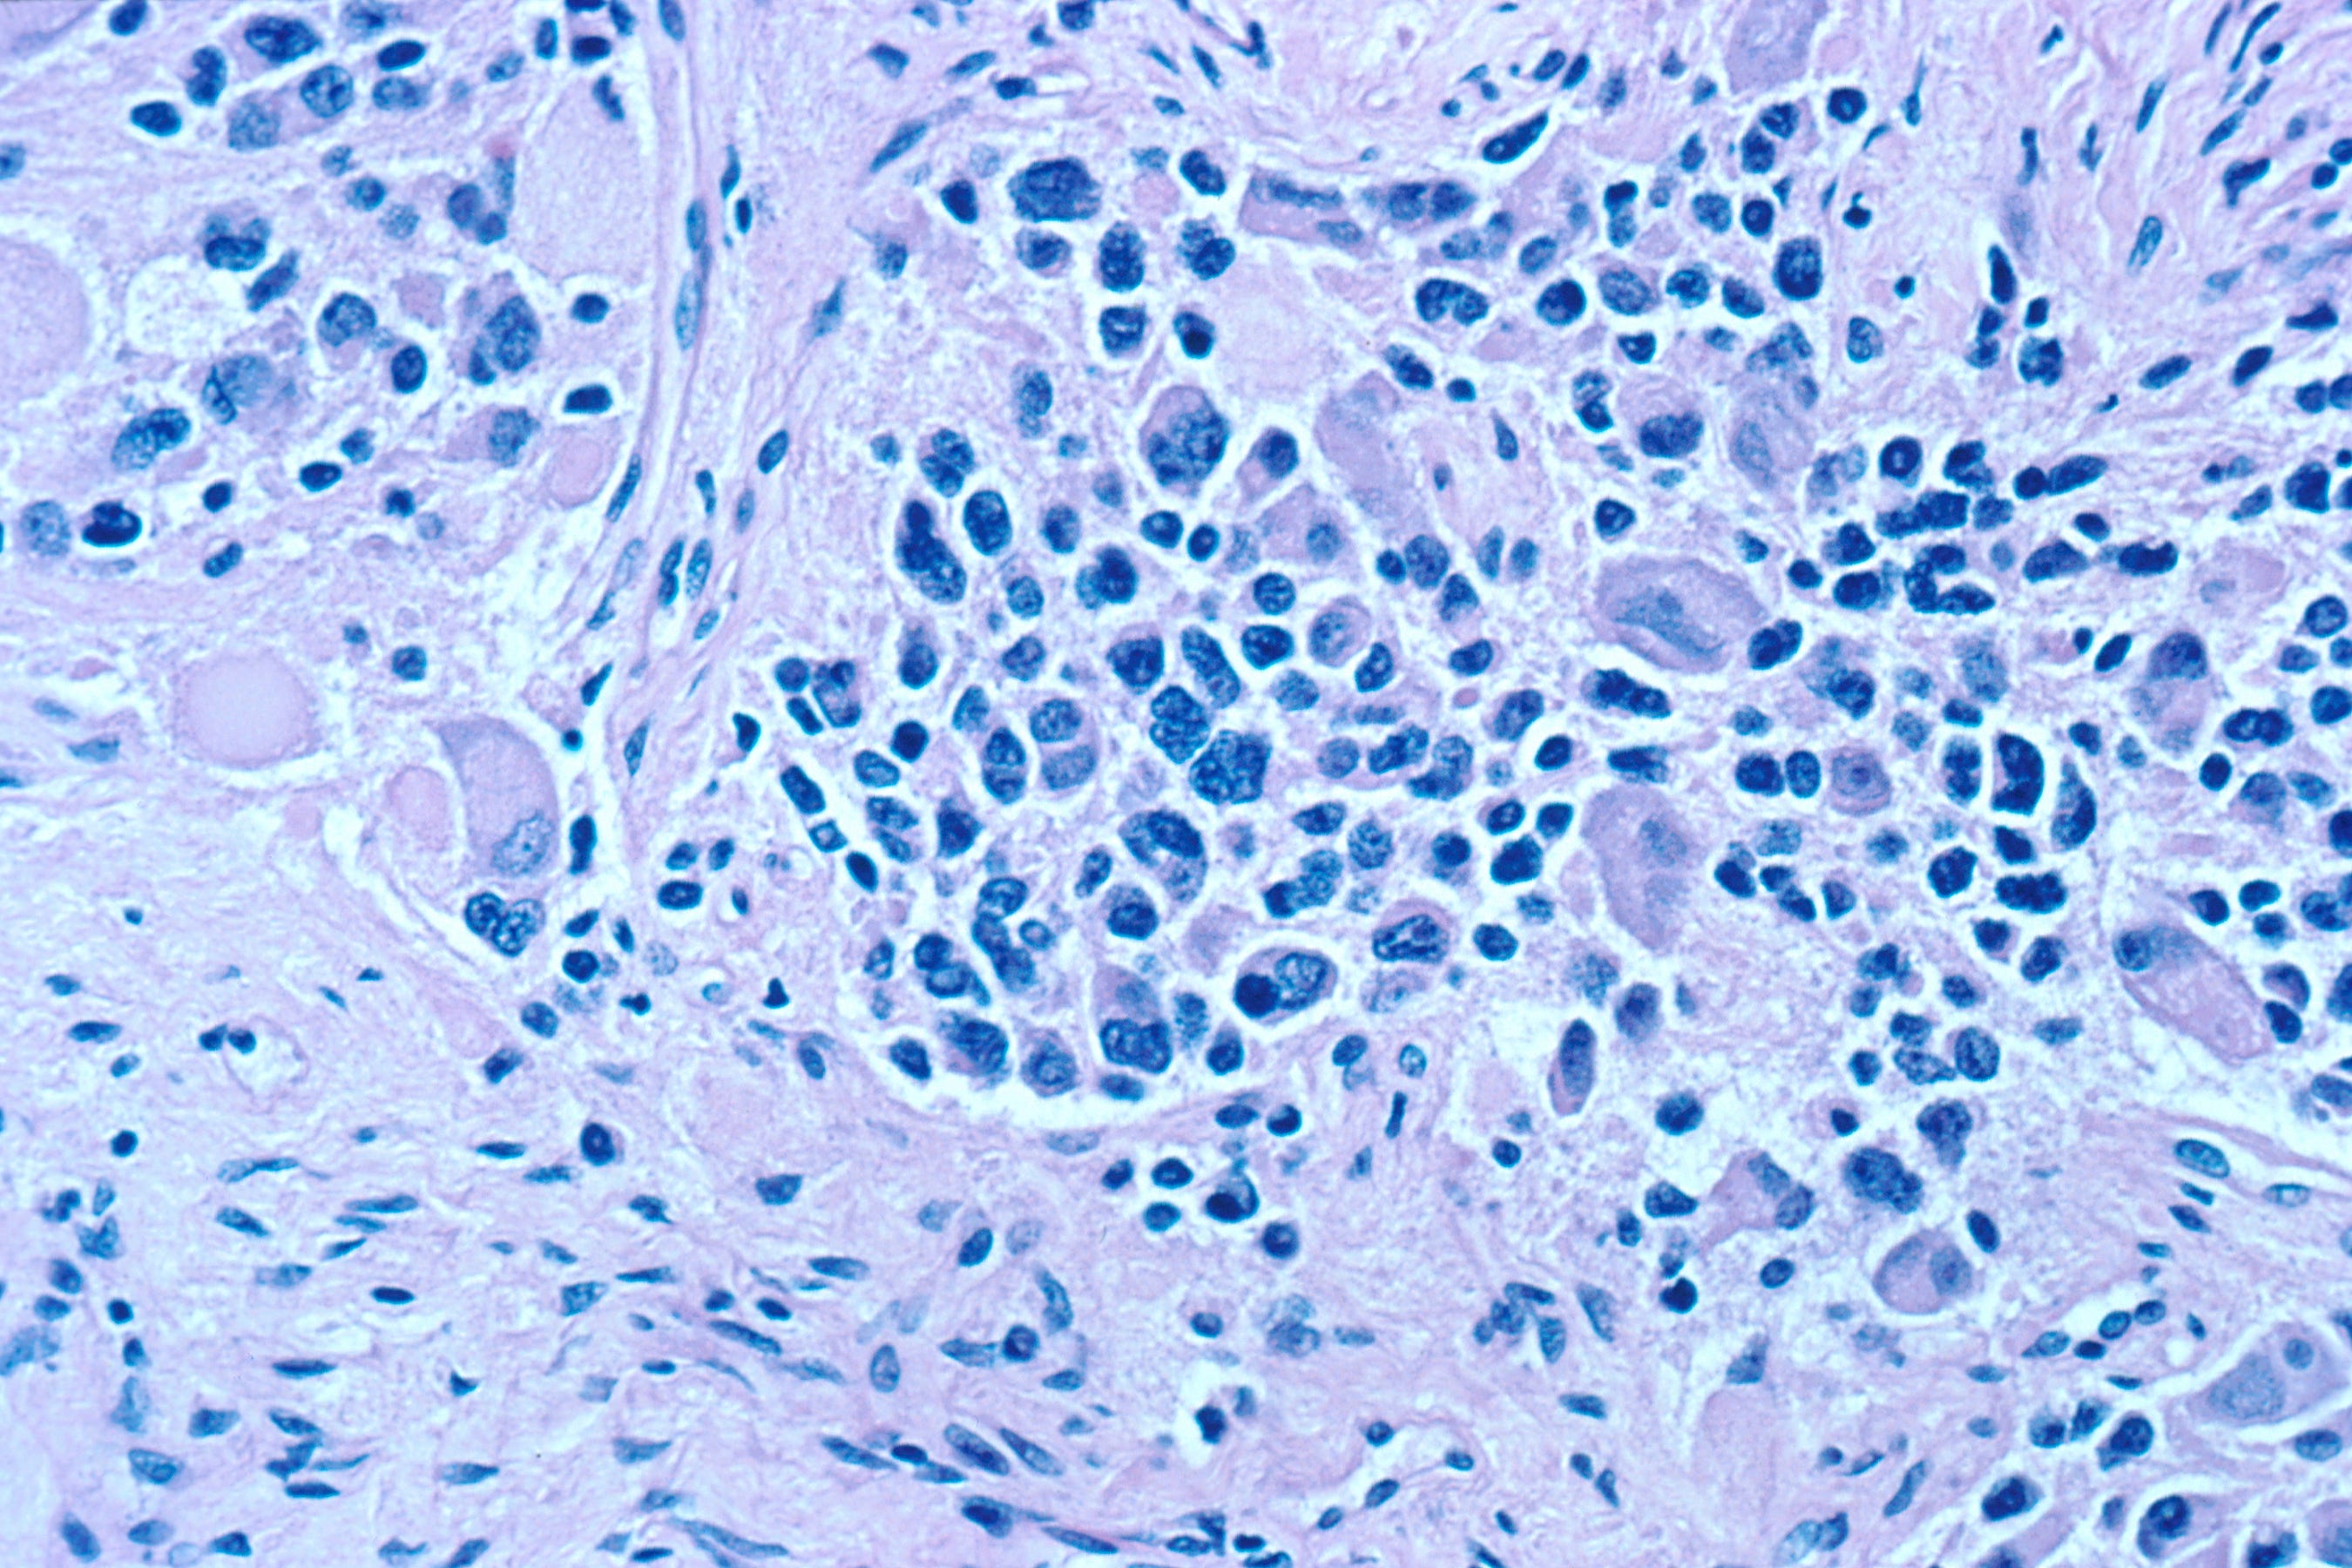 Neuroblastoma: a cancer model for IMPRES
